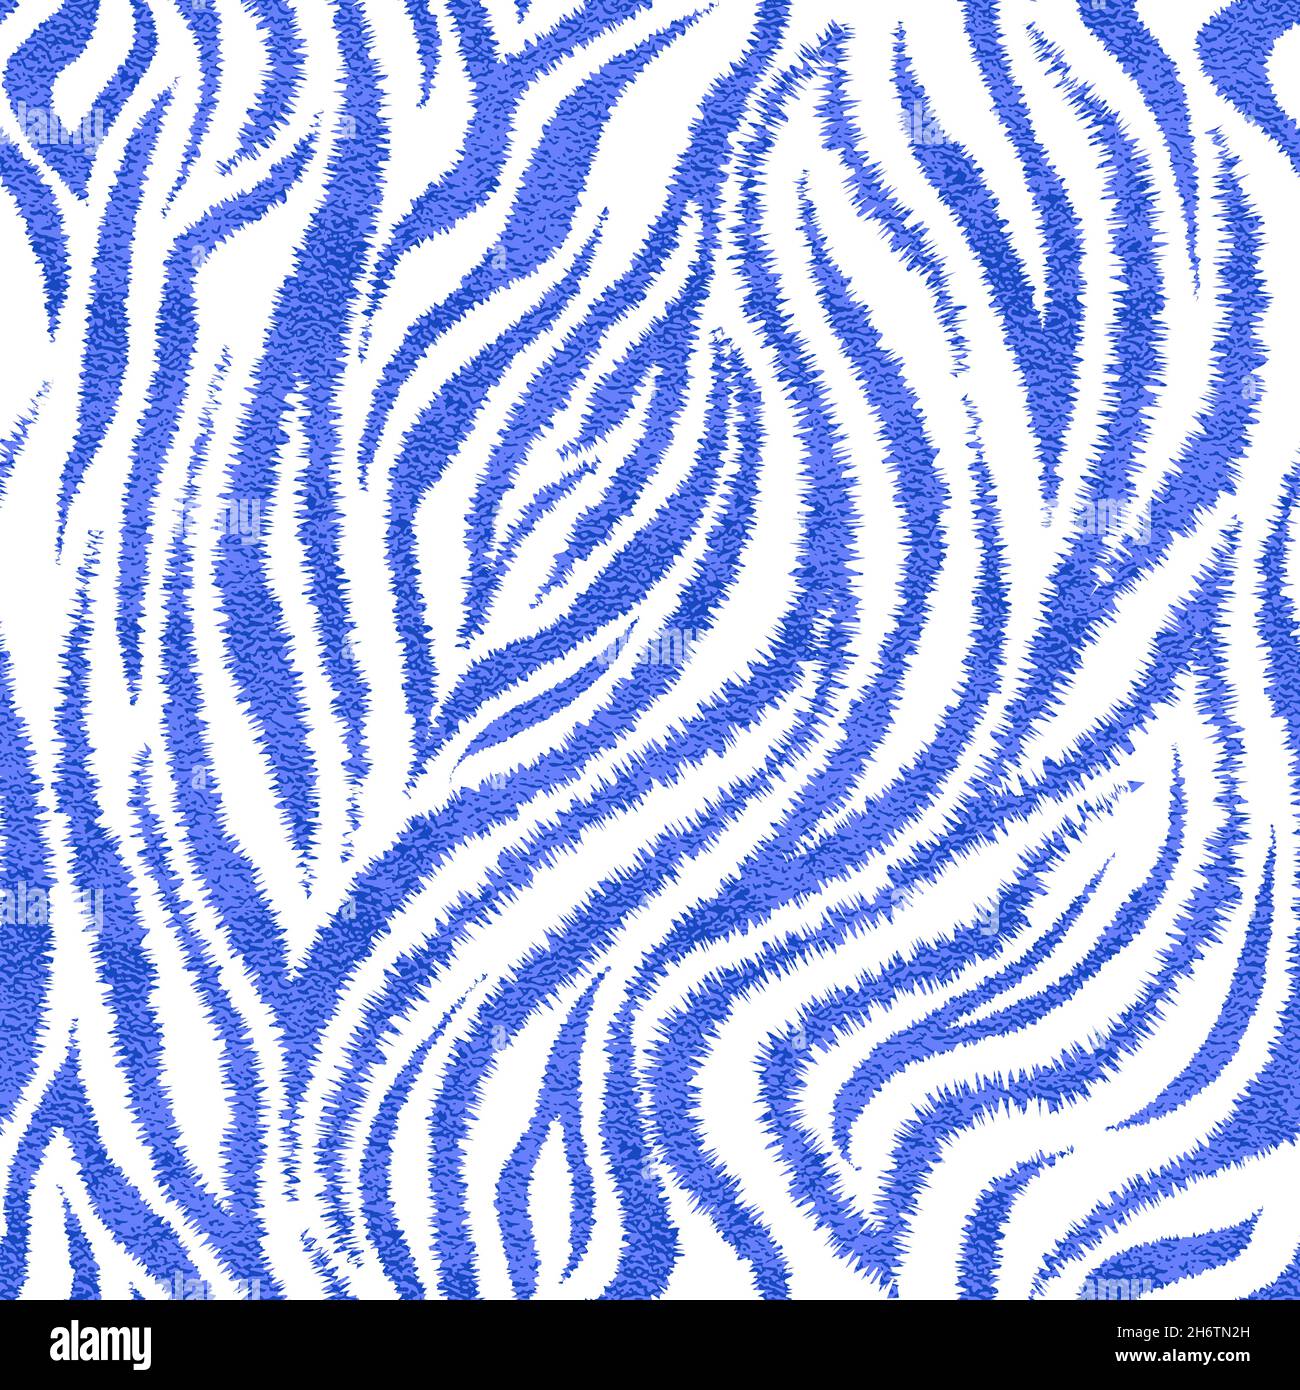 Full Seamless Wallpaper Zebra Tiger Stripes Stock Vector Royalty Free  1519379210  Shutterstock